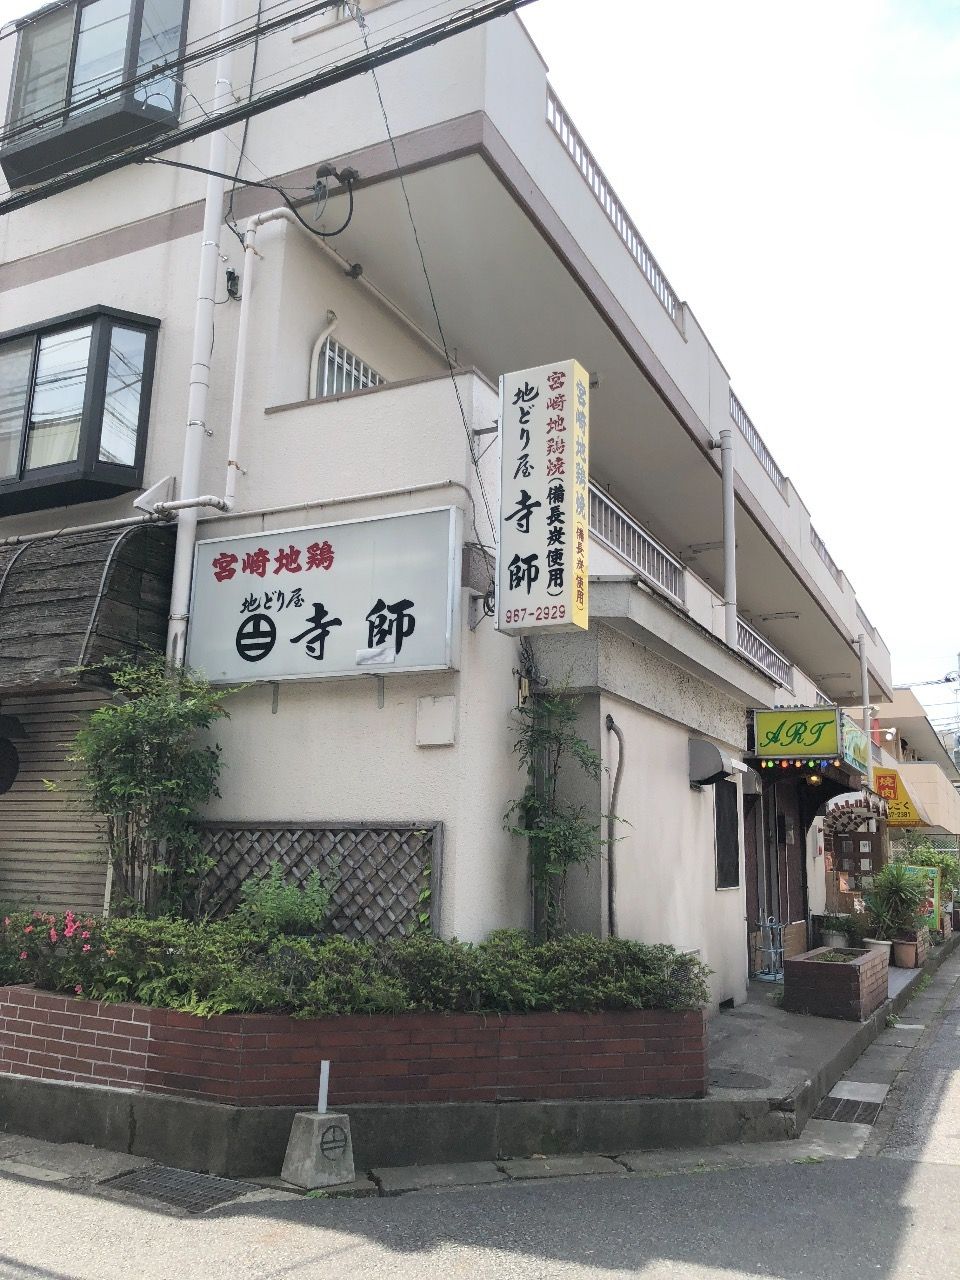 蒲生駅すぐ。宮崎地鶏の寺師に行ってきました。